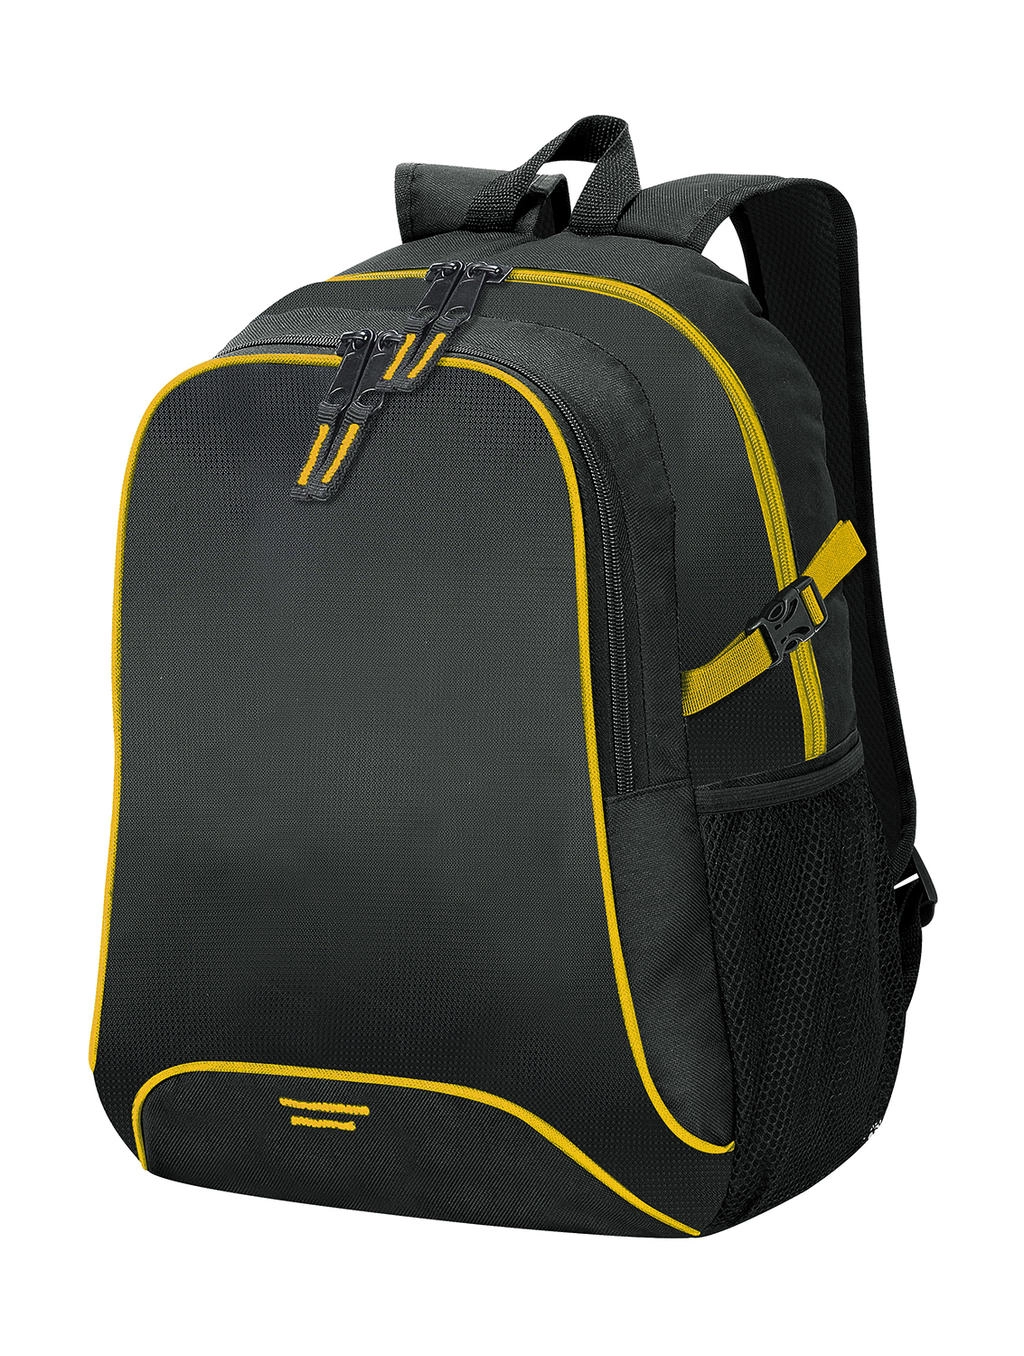 Osaka Basic Backpack zum Besticken und Bedrucken in der Farbe Black/Yellow mit Ihren Logo, Schriftzug oder Motiv.